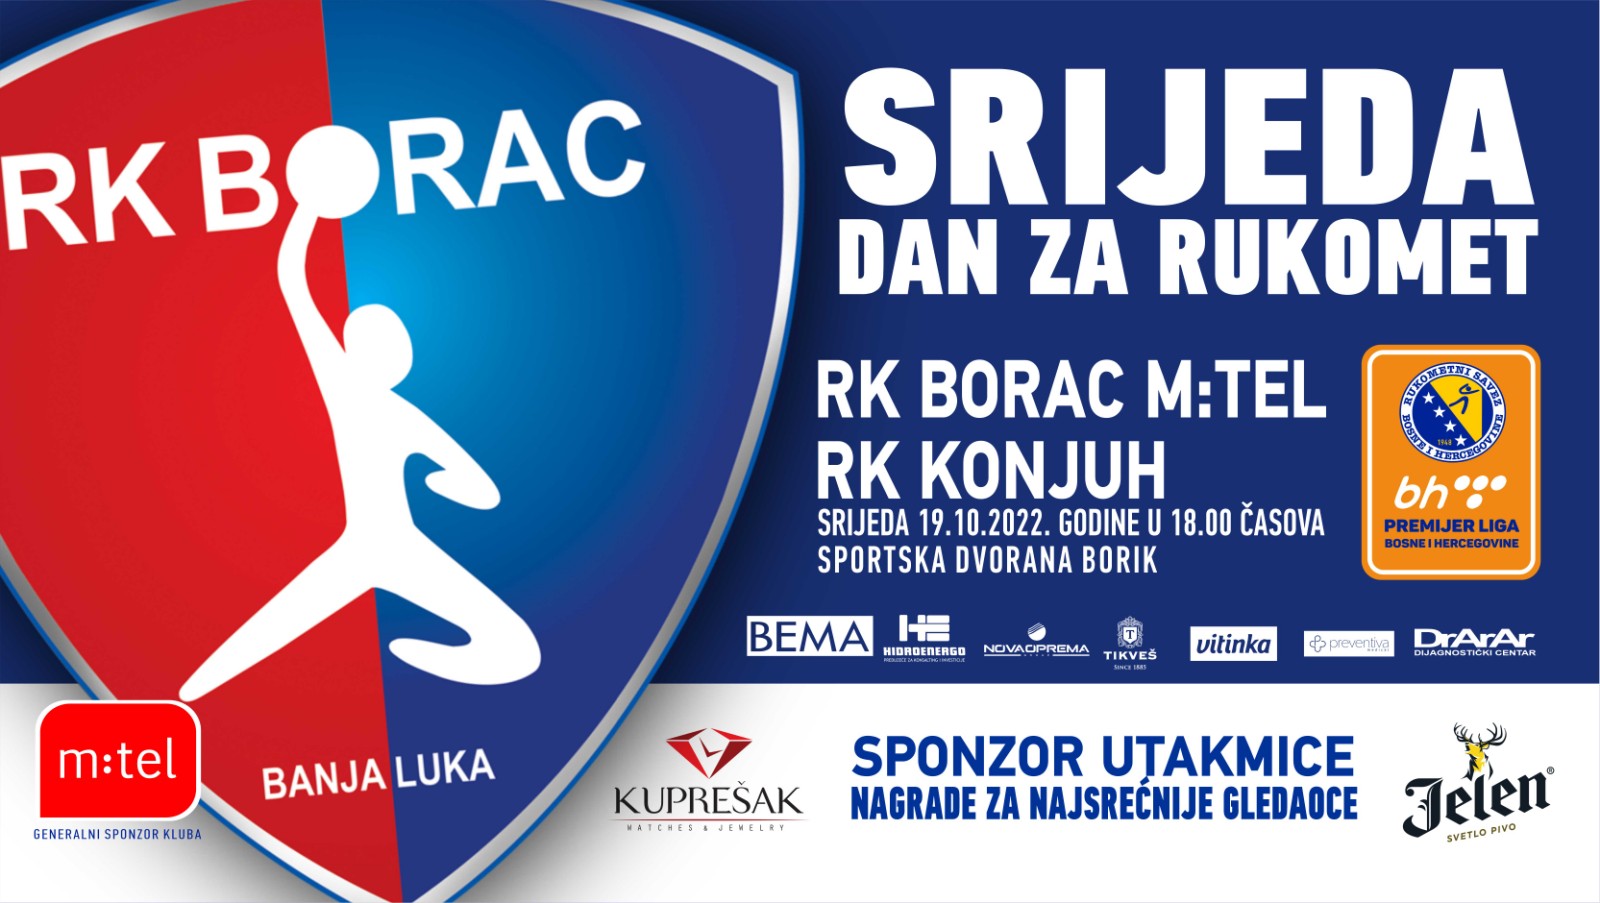 RK Borac vs RK Konjuh BH Telekom premijer liga BiH 6.kolo sezona 202223